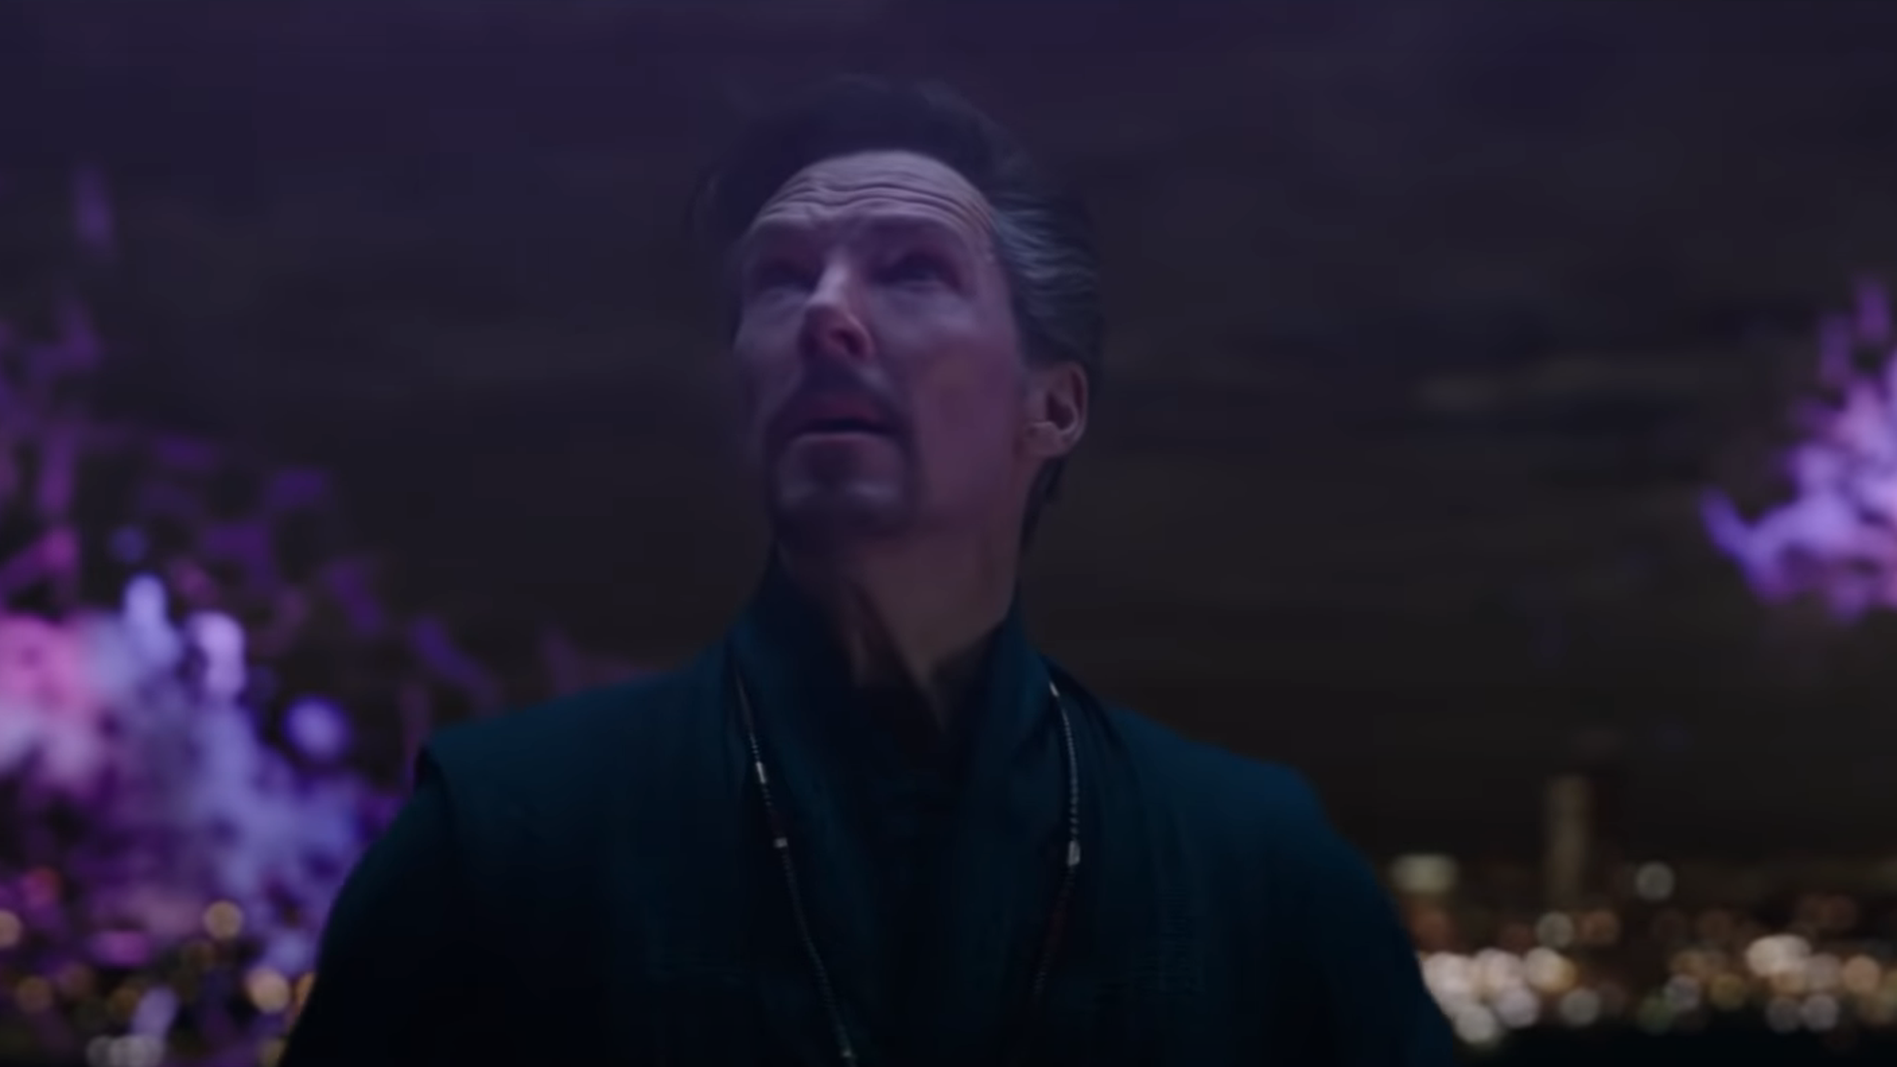 Doutor Estranho (Benedict Cumberbatch) em Homem-Aranha 3 pode indicar  início do Multiverso na Marvel - Purebreak